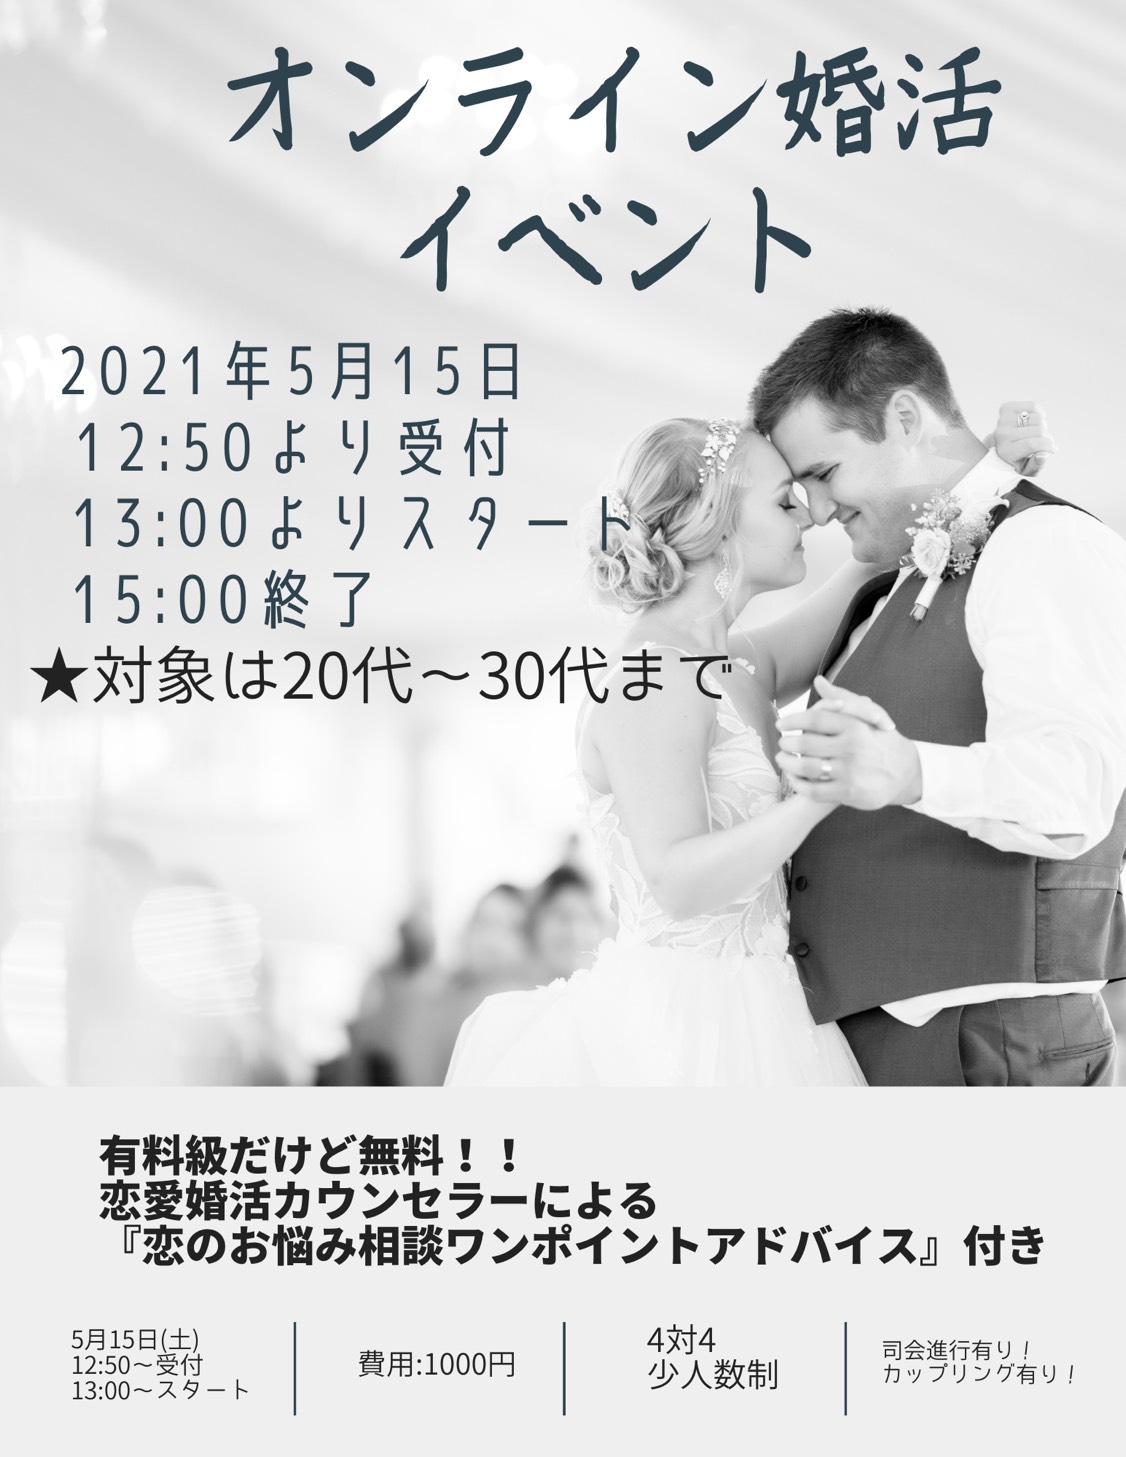 【オンライン開催】春のときめき♡カップリングイベント